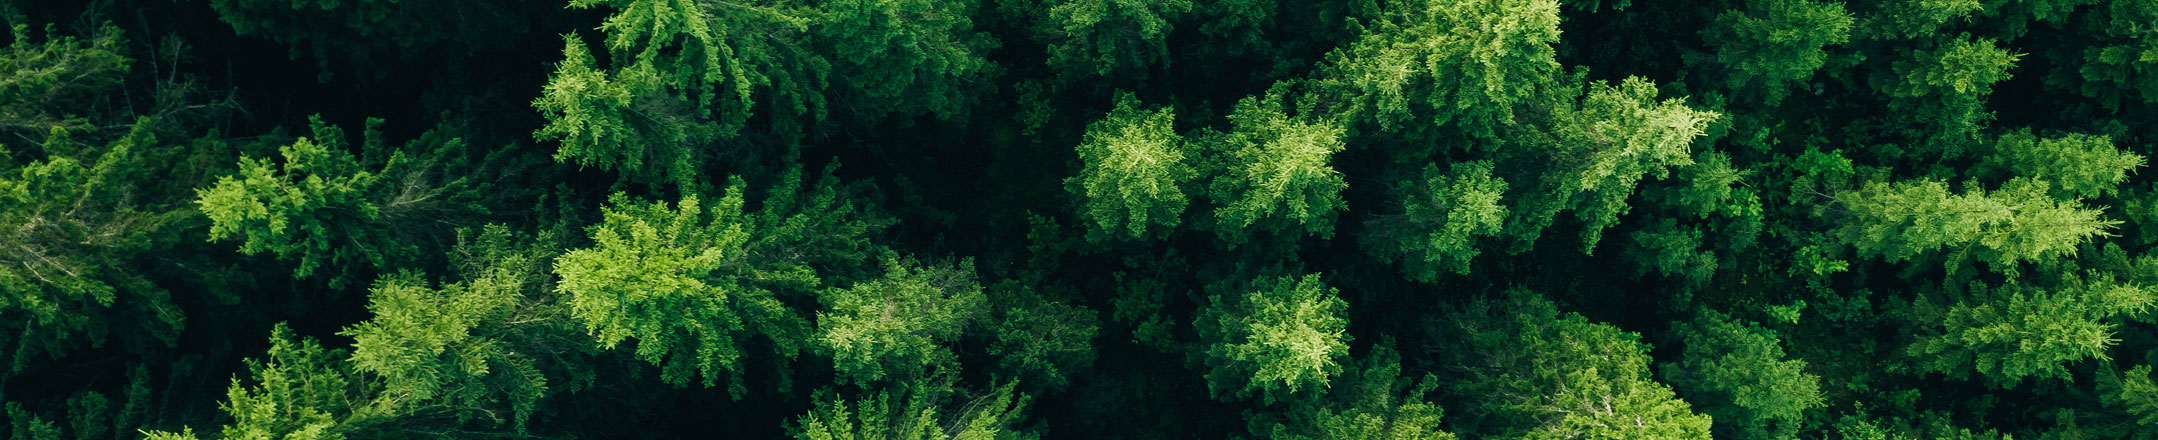 Wald von oben fotografiert